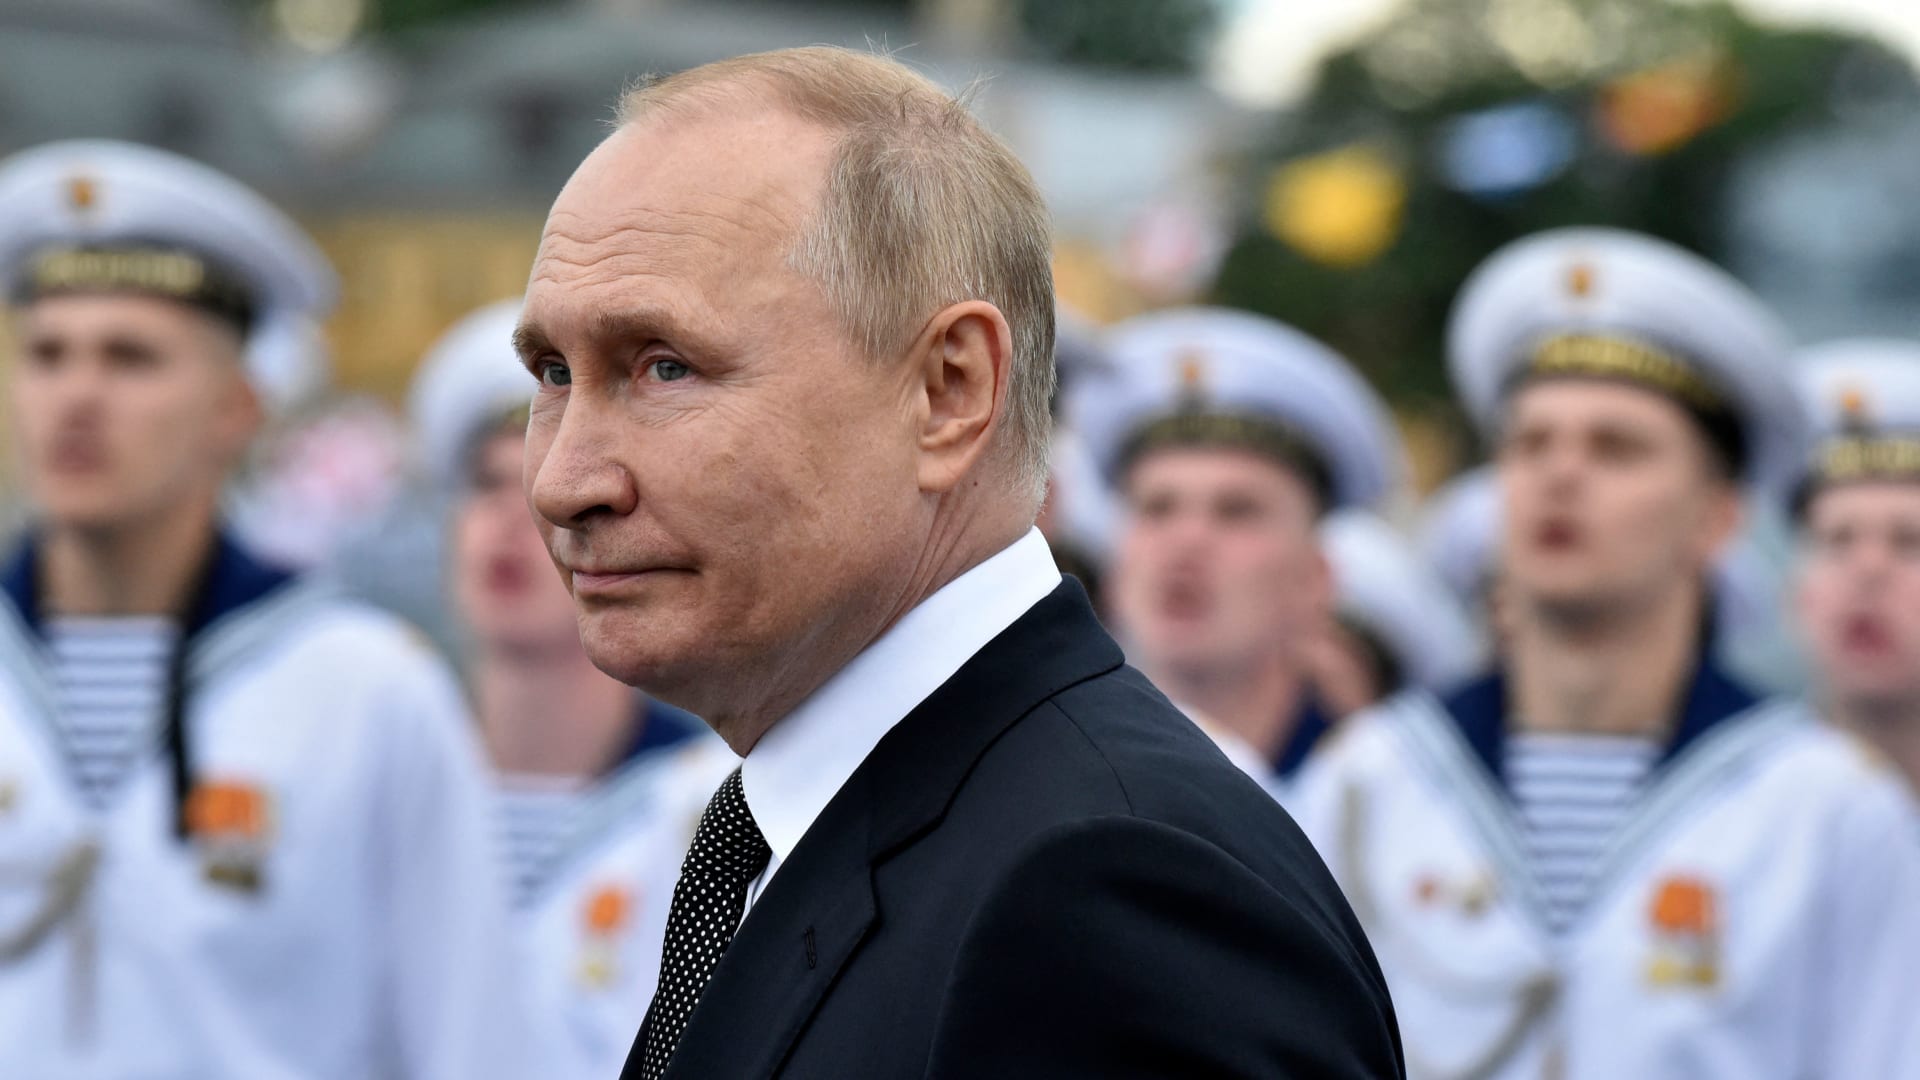 بوتين: روسيا مستعدة لتزويد حلفائها بأحداث المعدات العسكرية وتدريب الجنود الأجانب